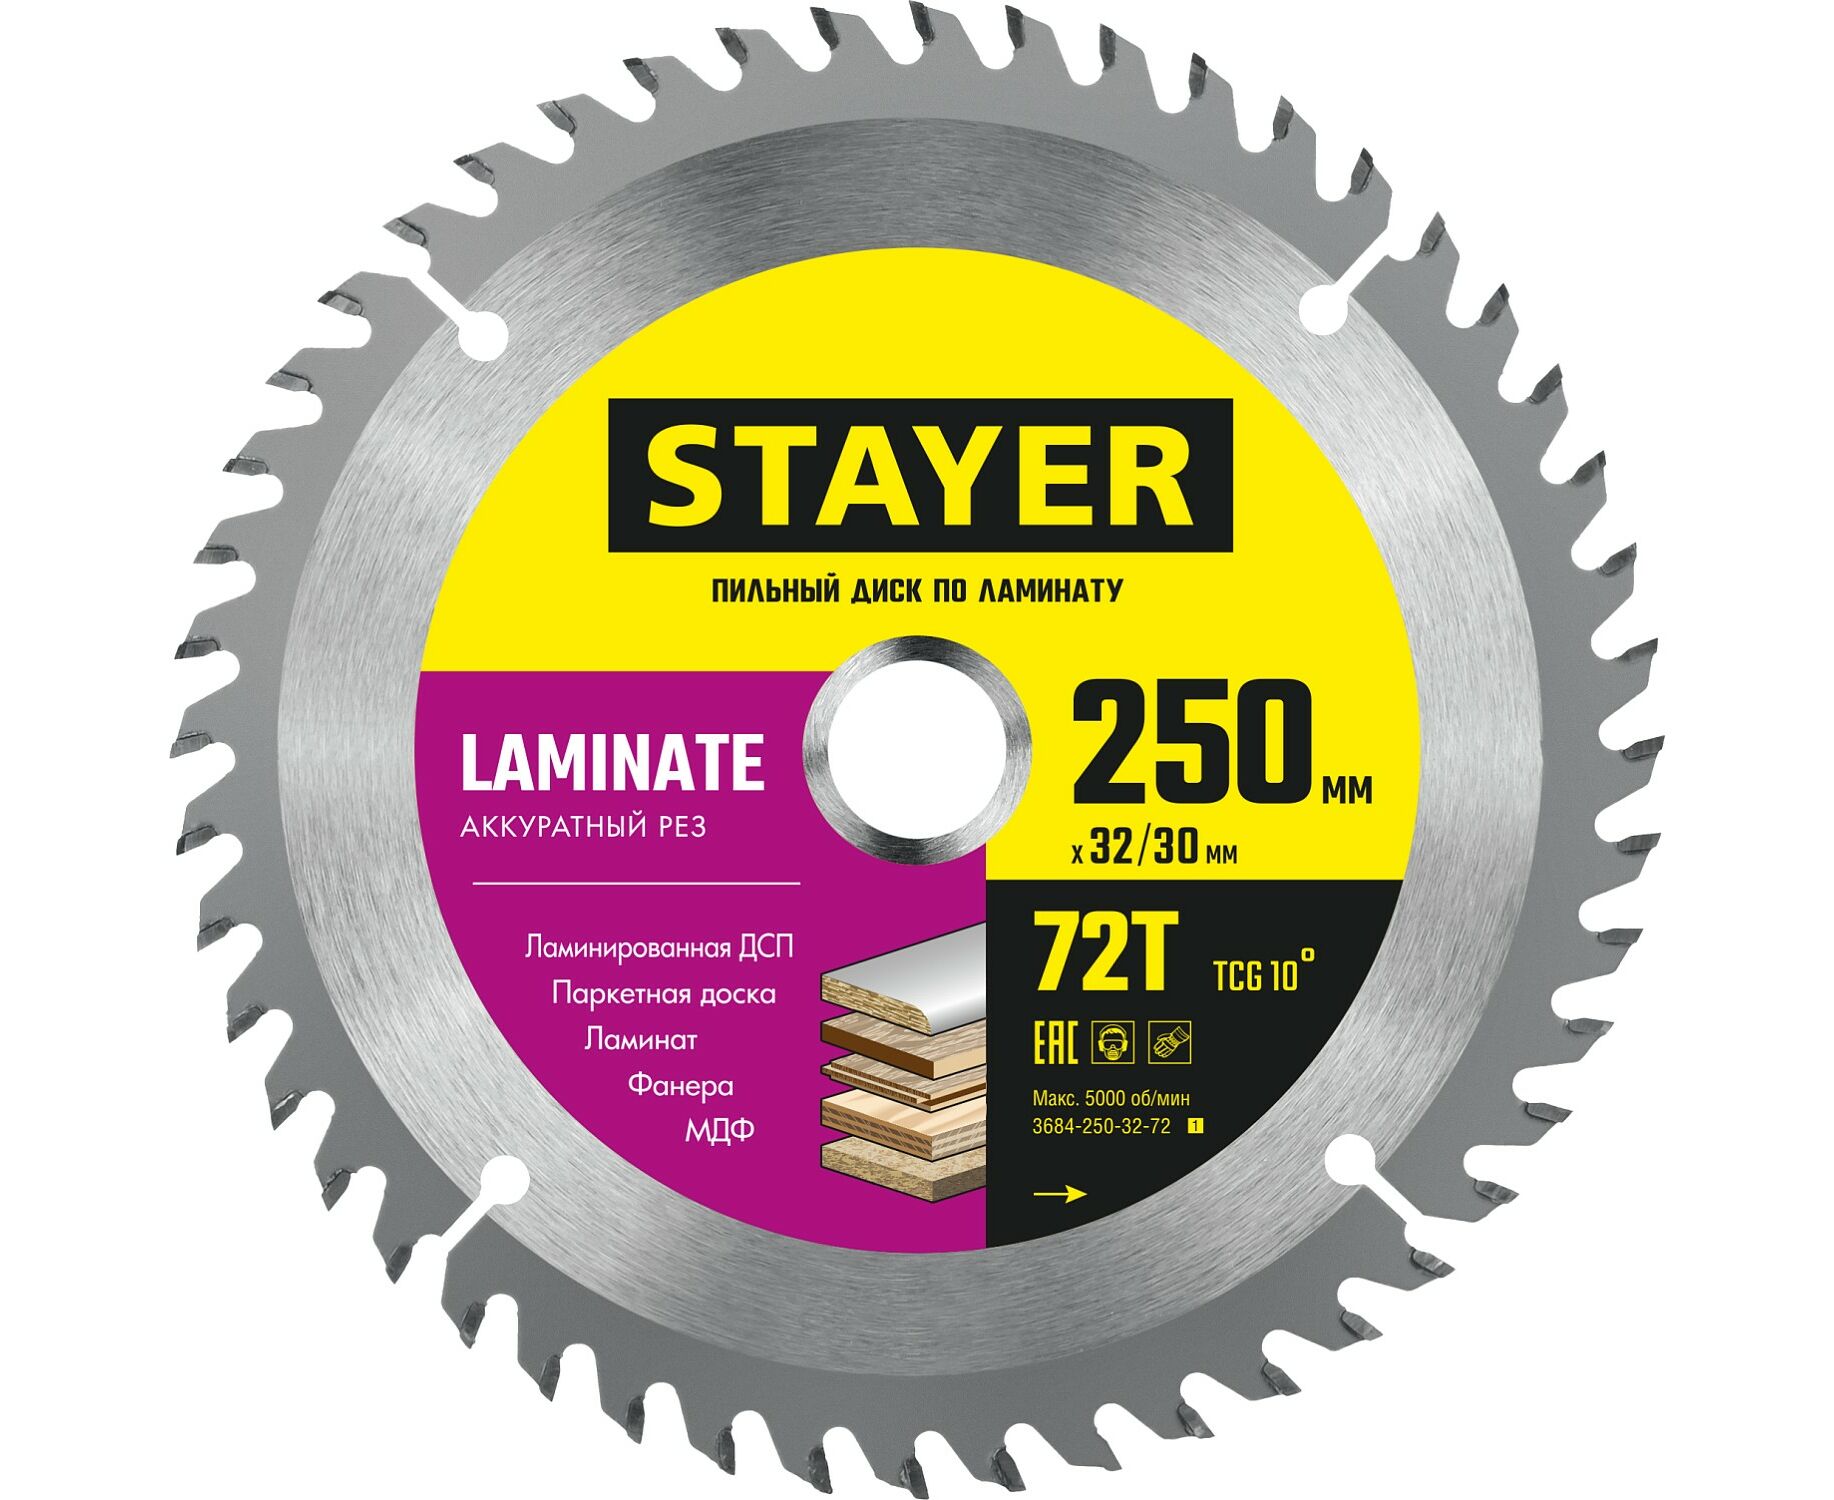 Пильный диск STAYER LAMINATE 250 x 32/30мм 72Т, по ламинату, аккуратный рез пильный диск stayer laminate 230 x 32 30мм 72т по ламинату аккуратный рез